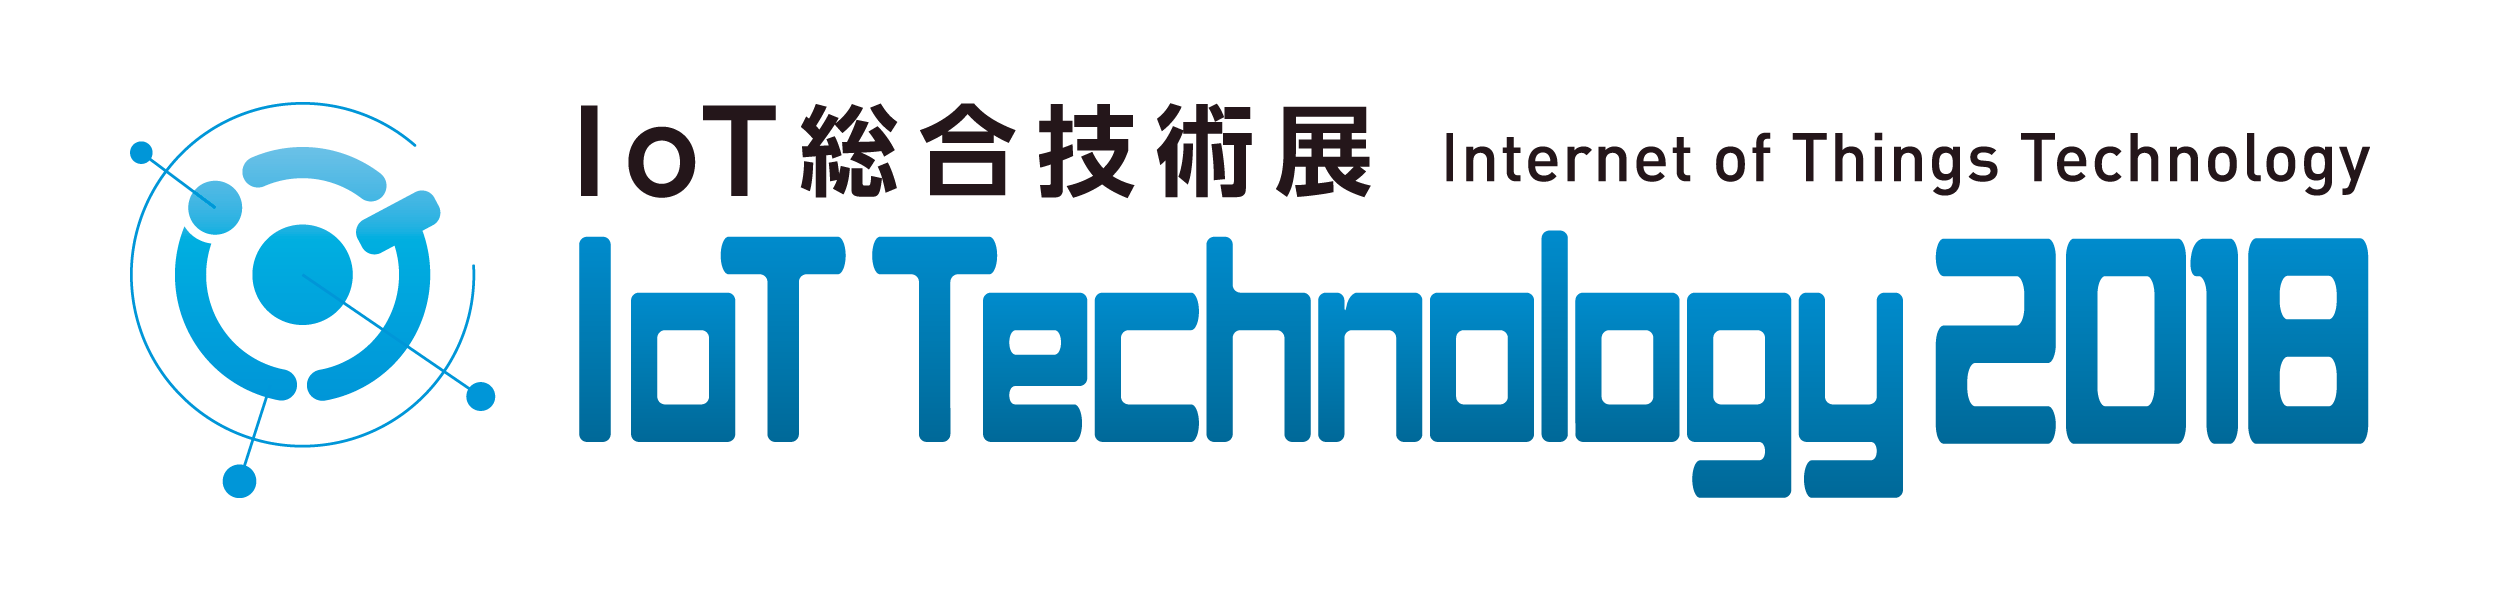 IoT総合技術展 2018